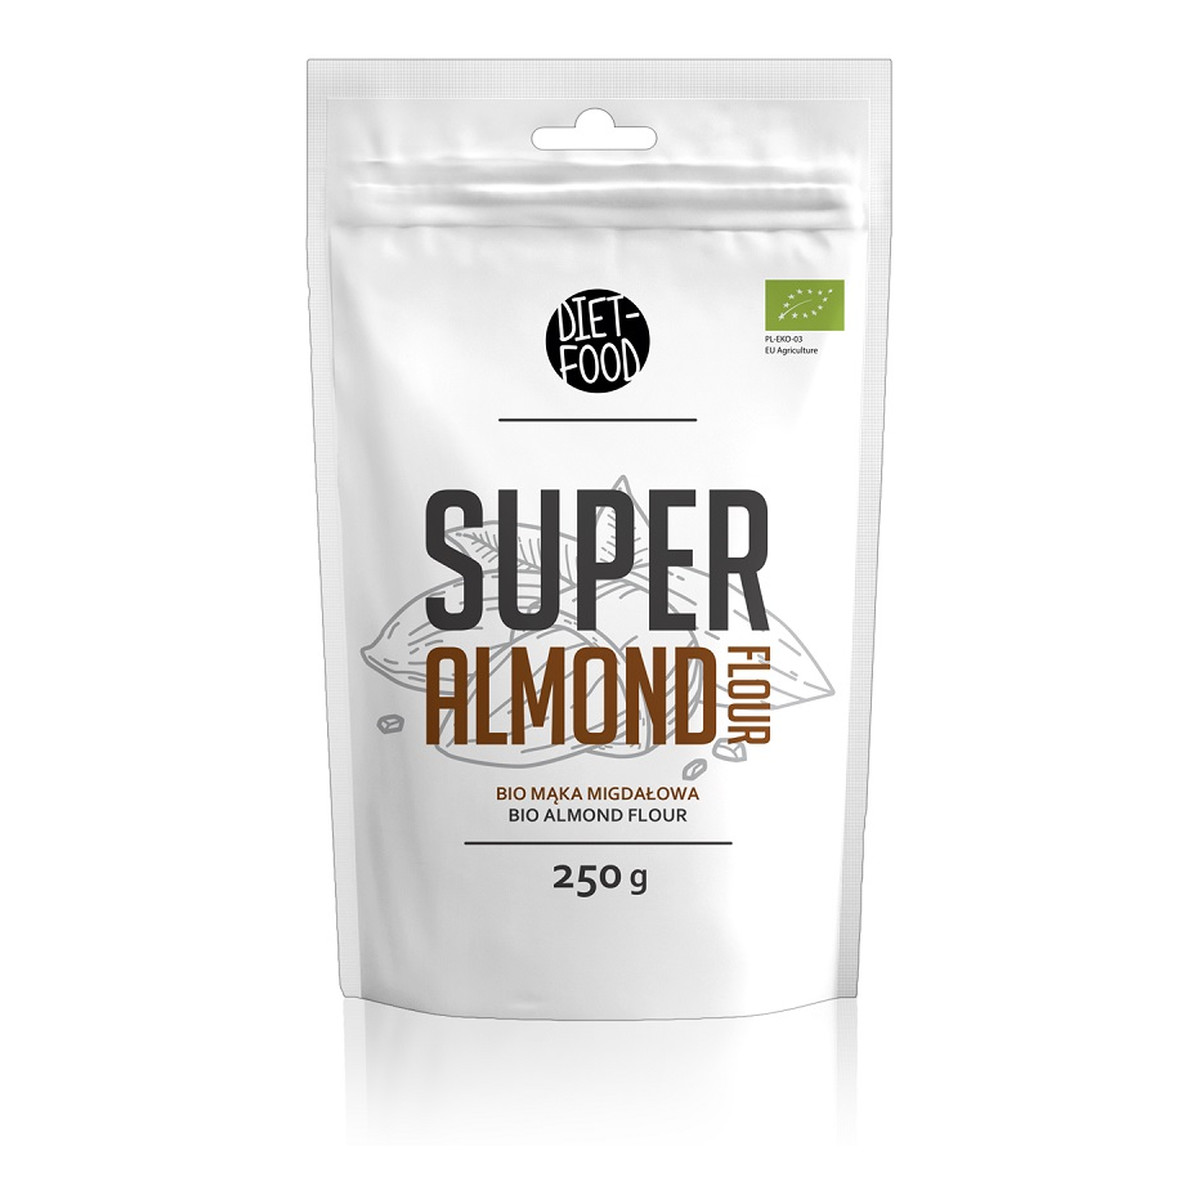 Diet-Food Super Almond Flour bio mąka migdałowa 250g